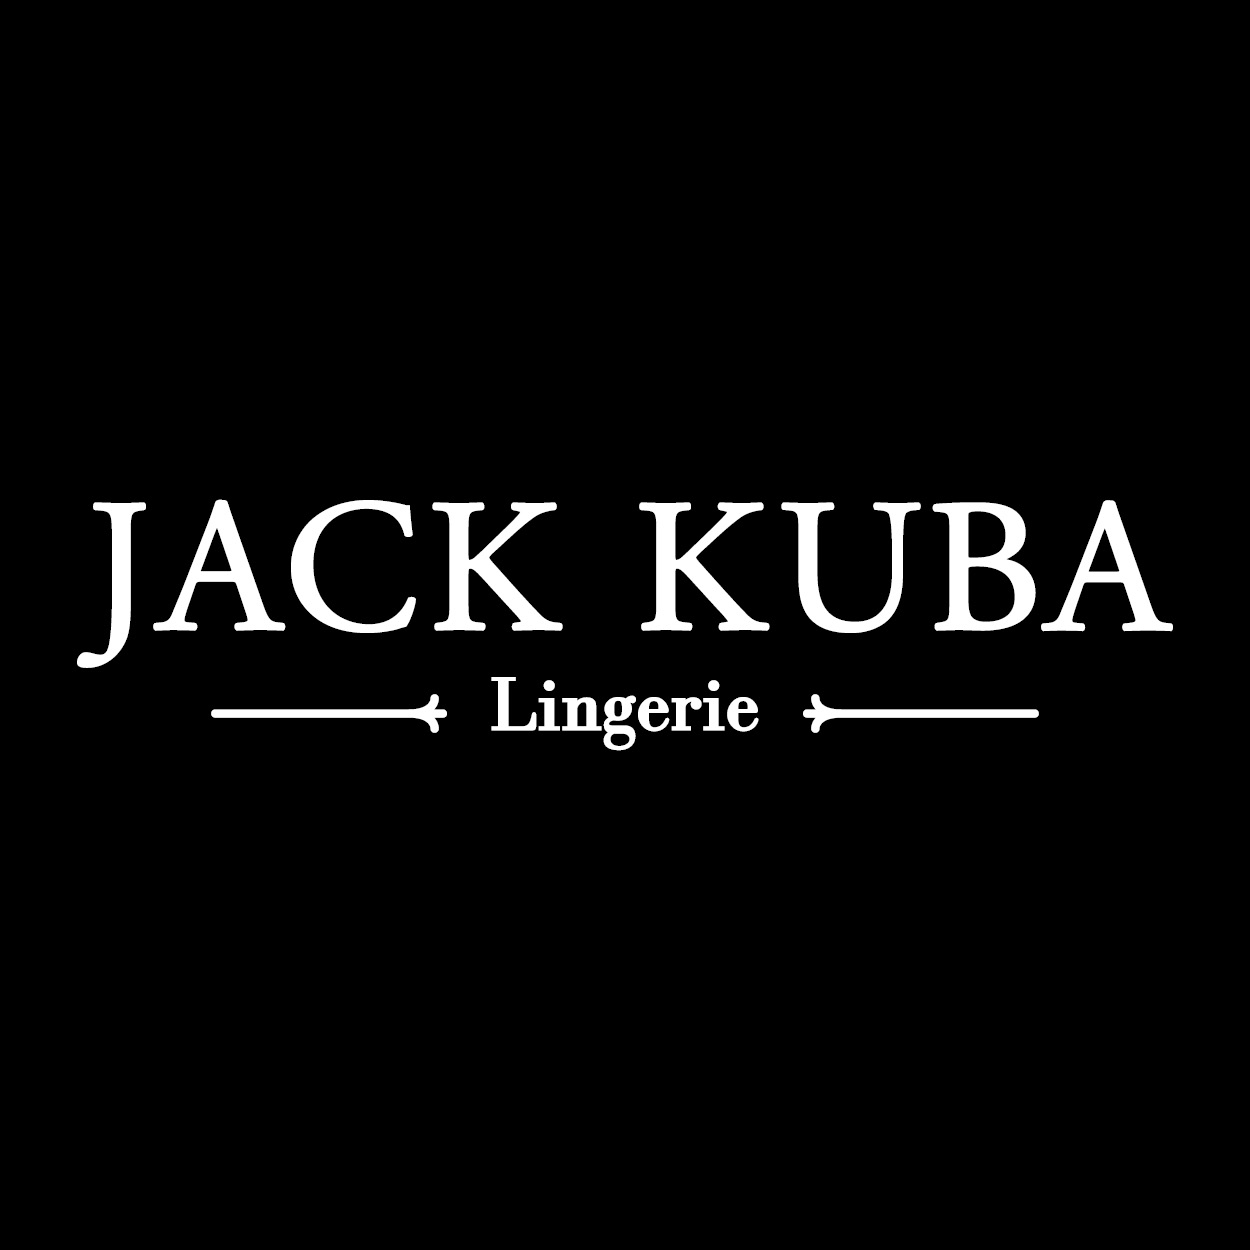   '  - Jack Kuba